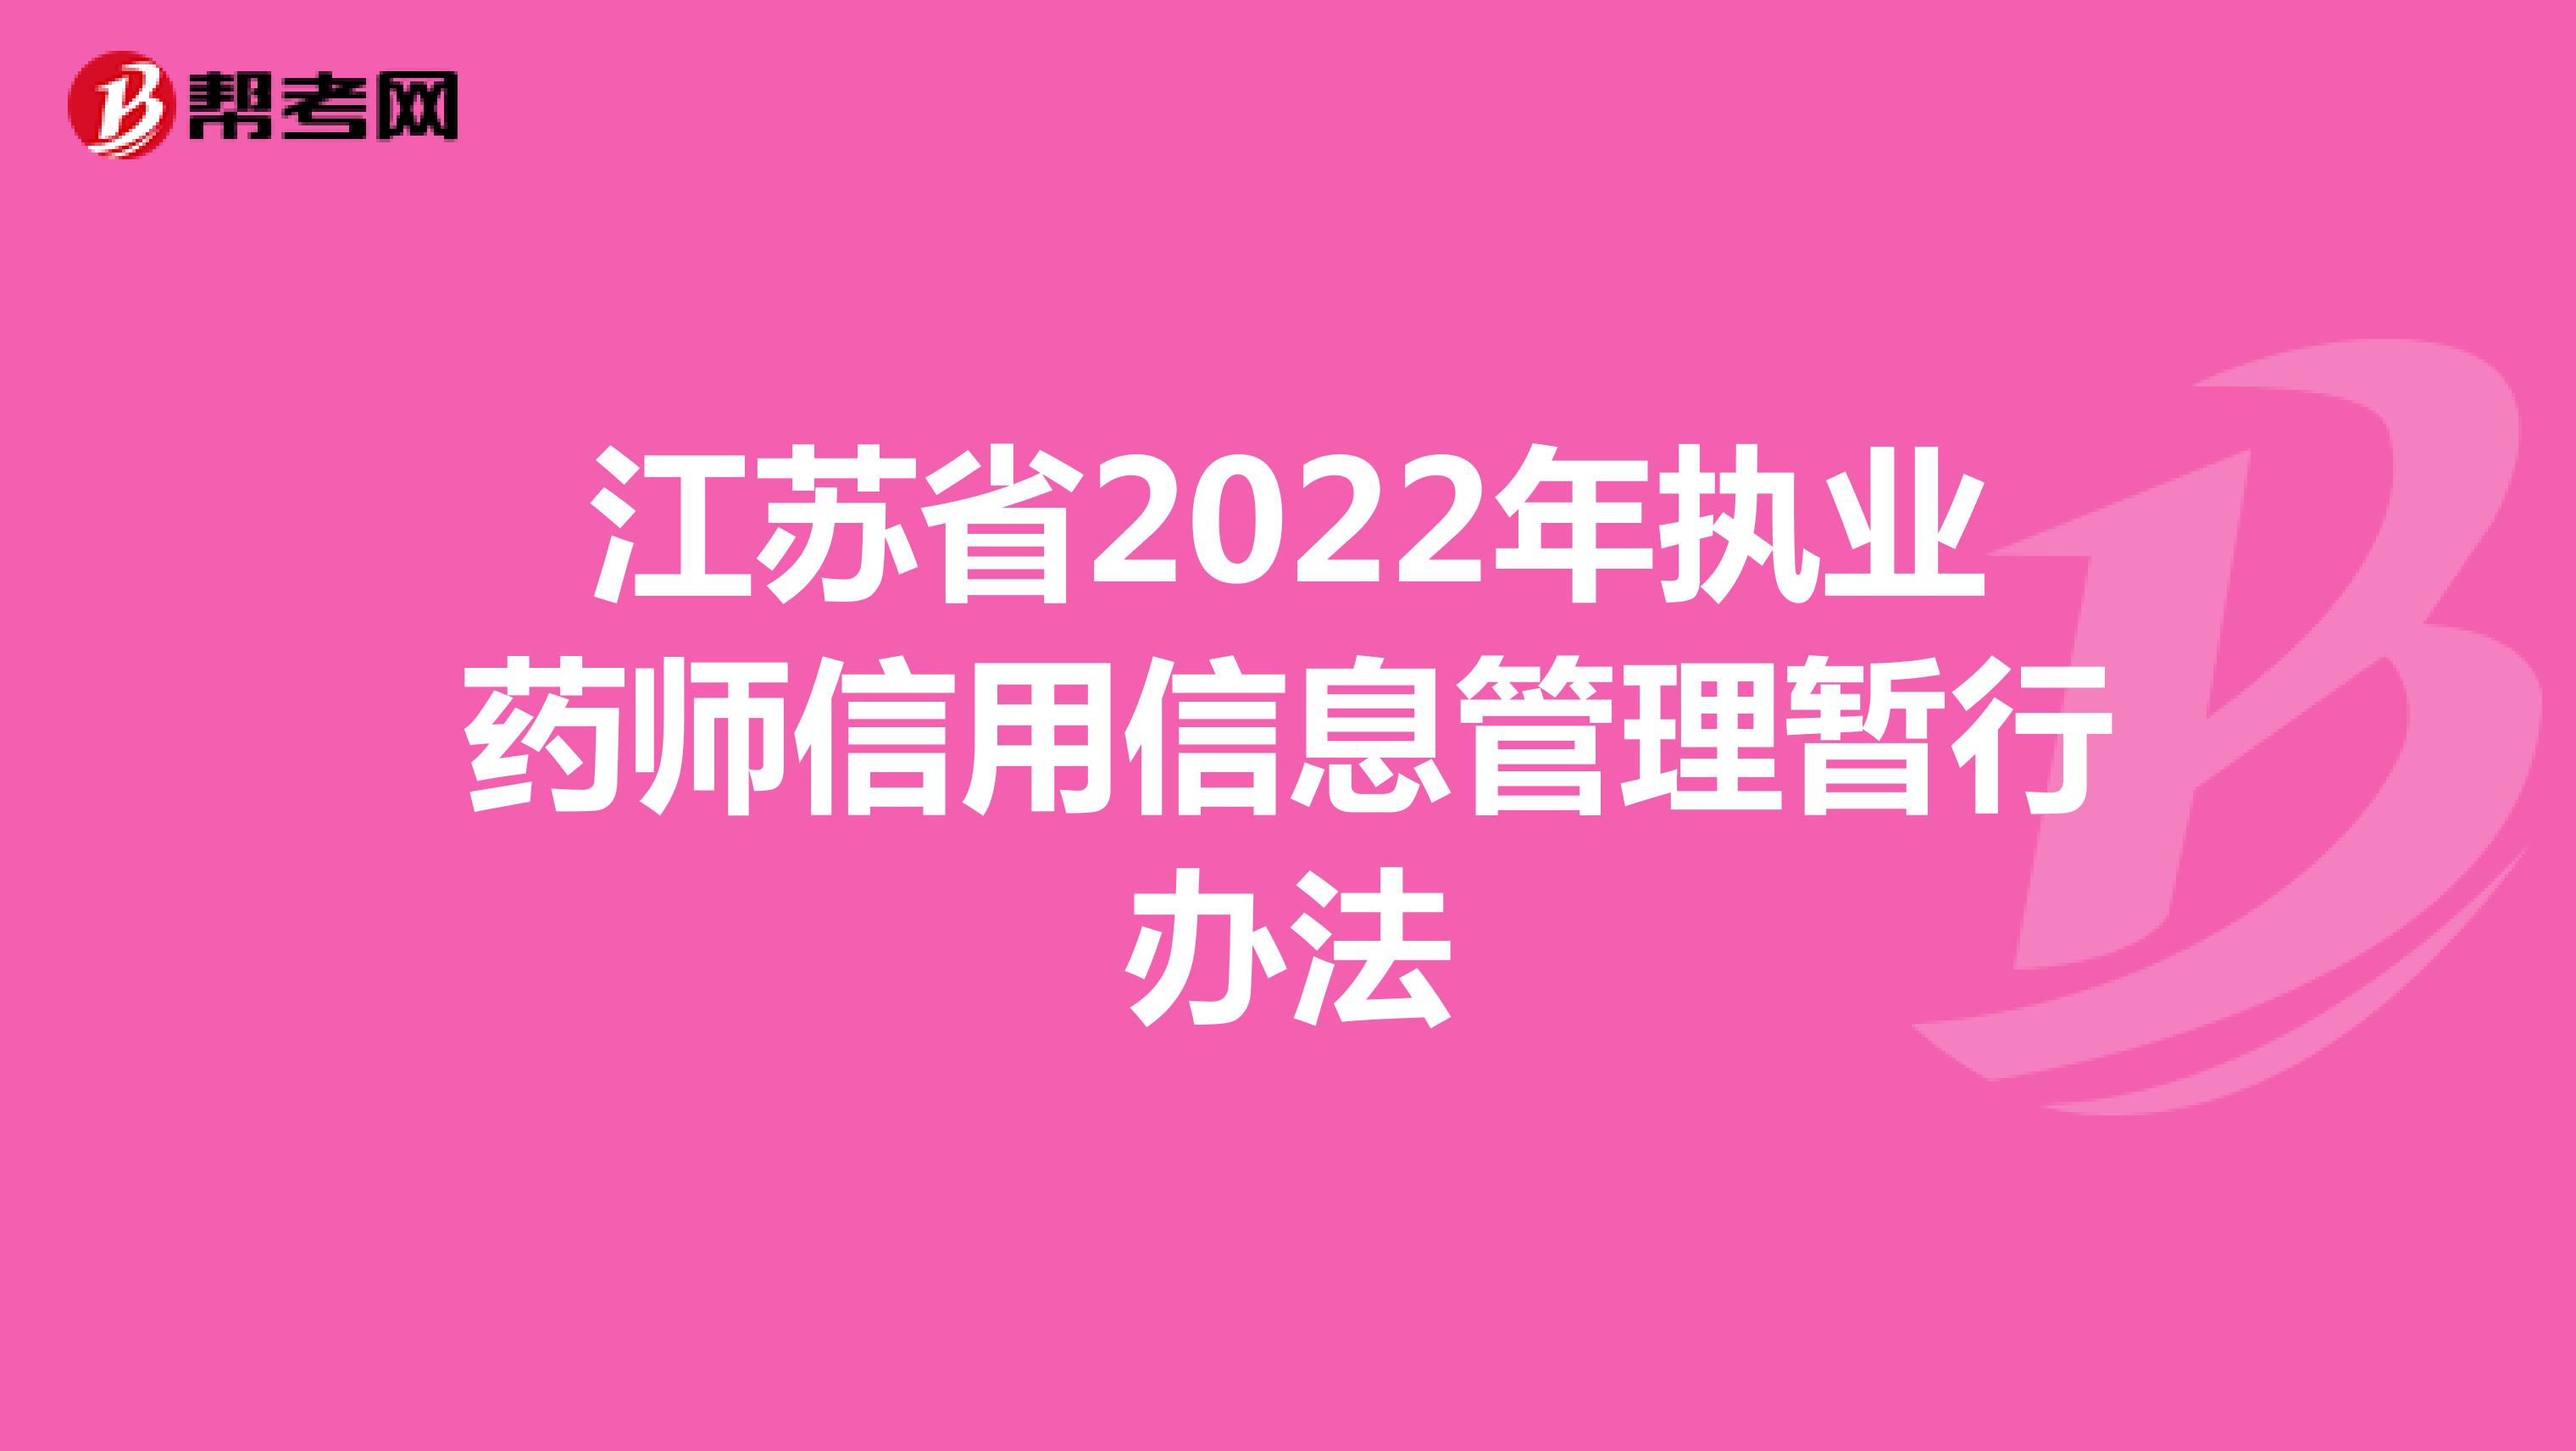 江苏省2022年执业药师信用信息管理暂行办法